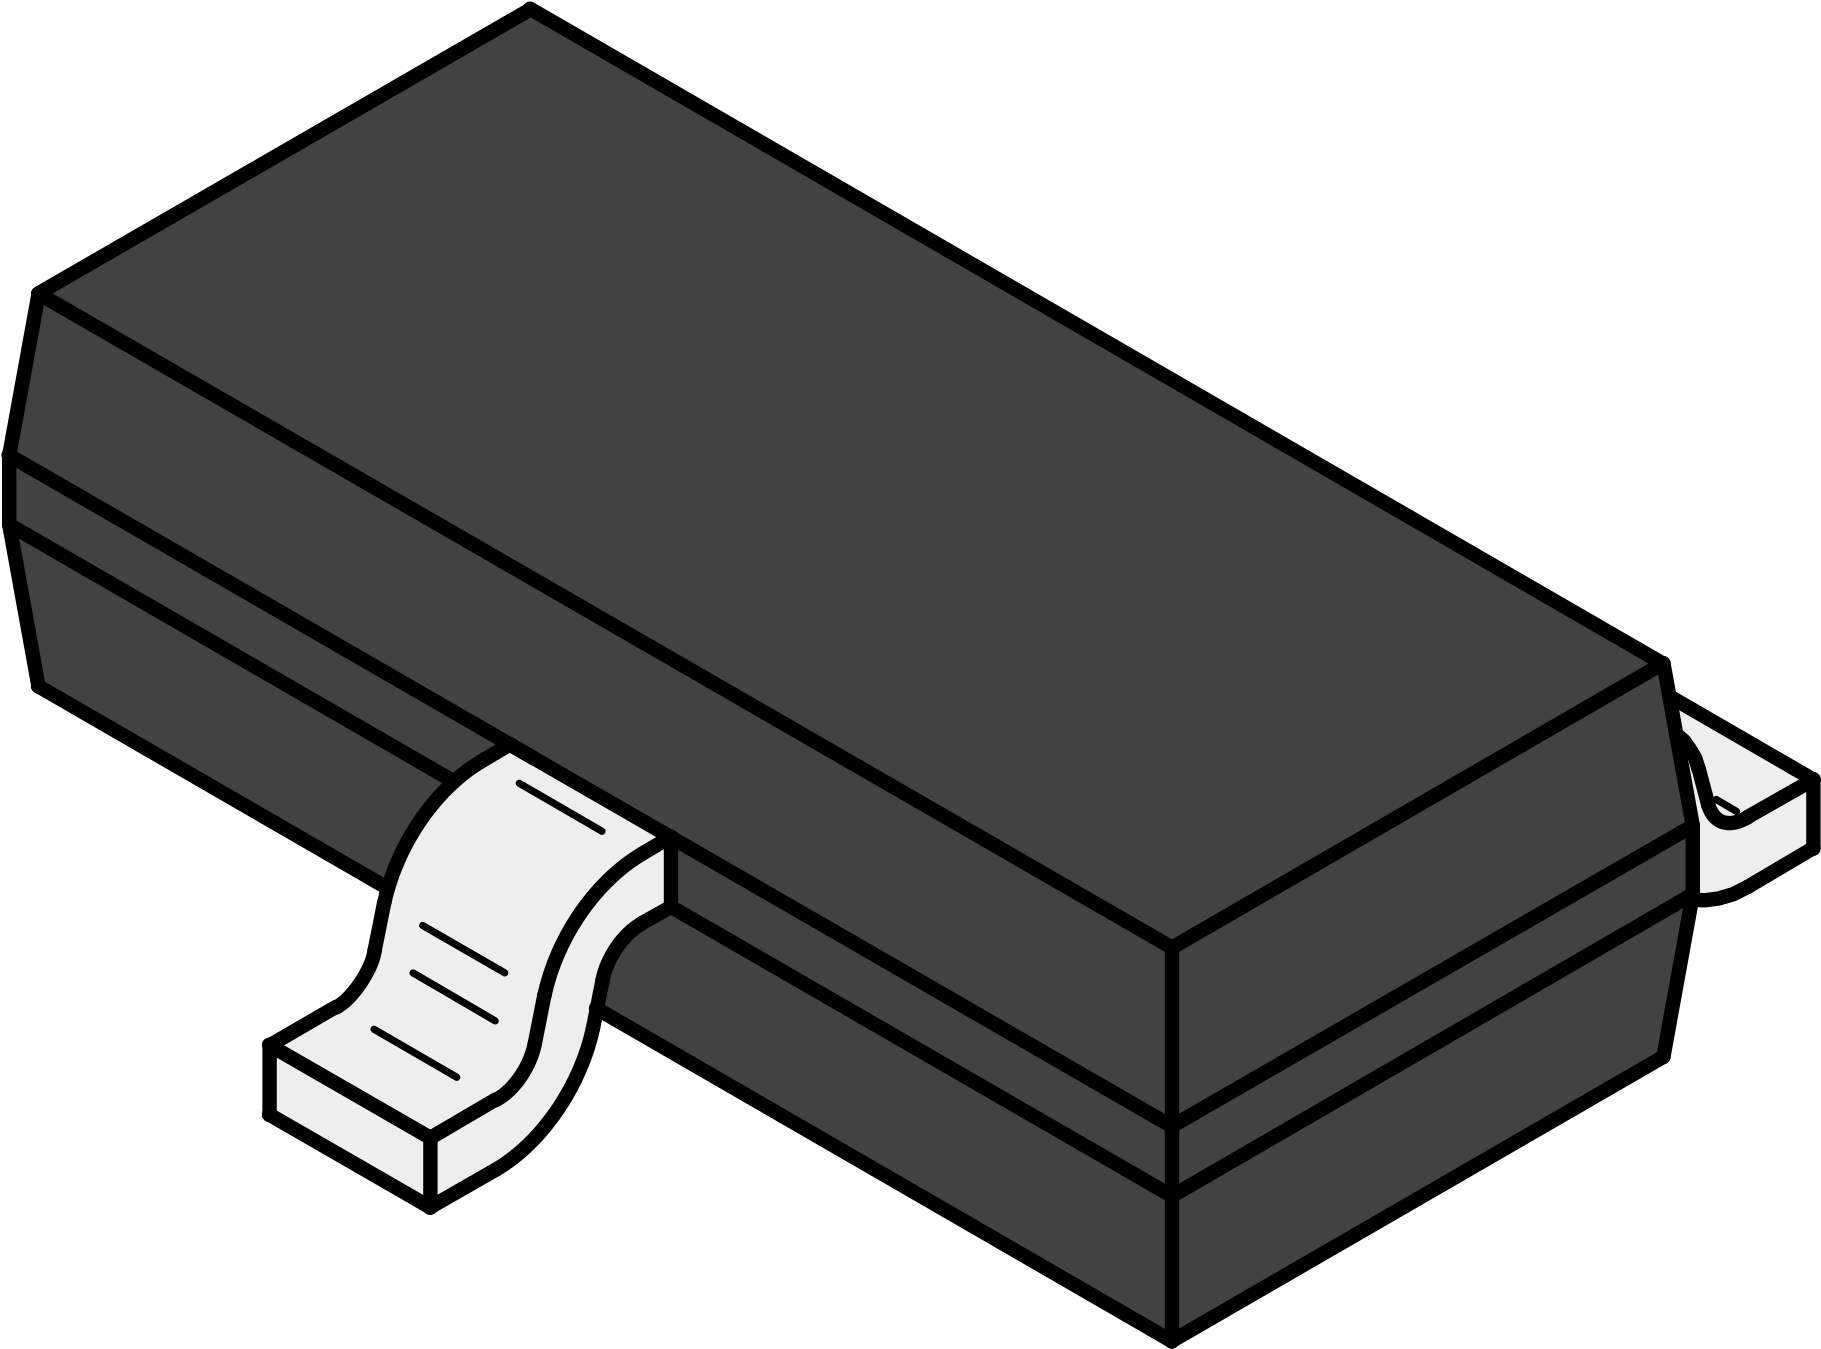 Black Eraser Cartoon Illustration